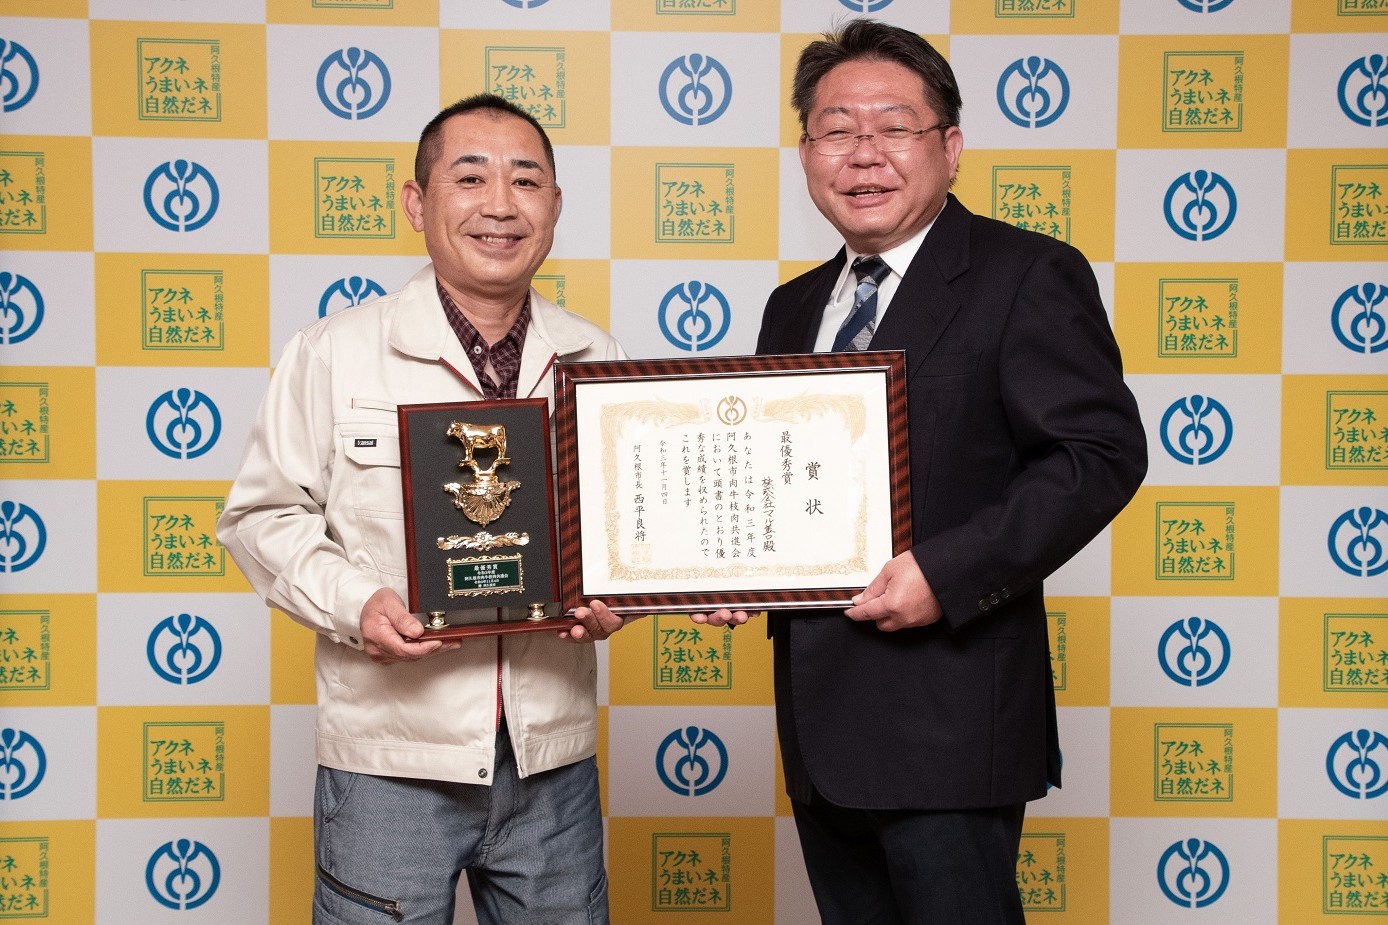 株式会社マル善代表の石原善和さんと西平市長の写真